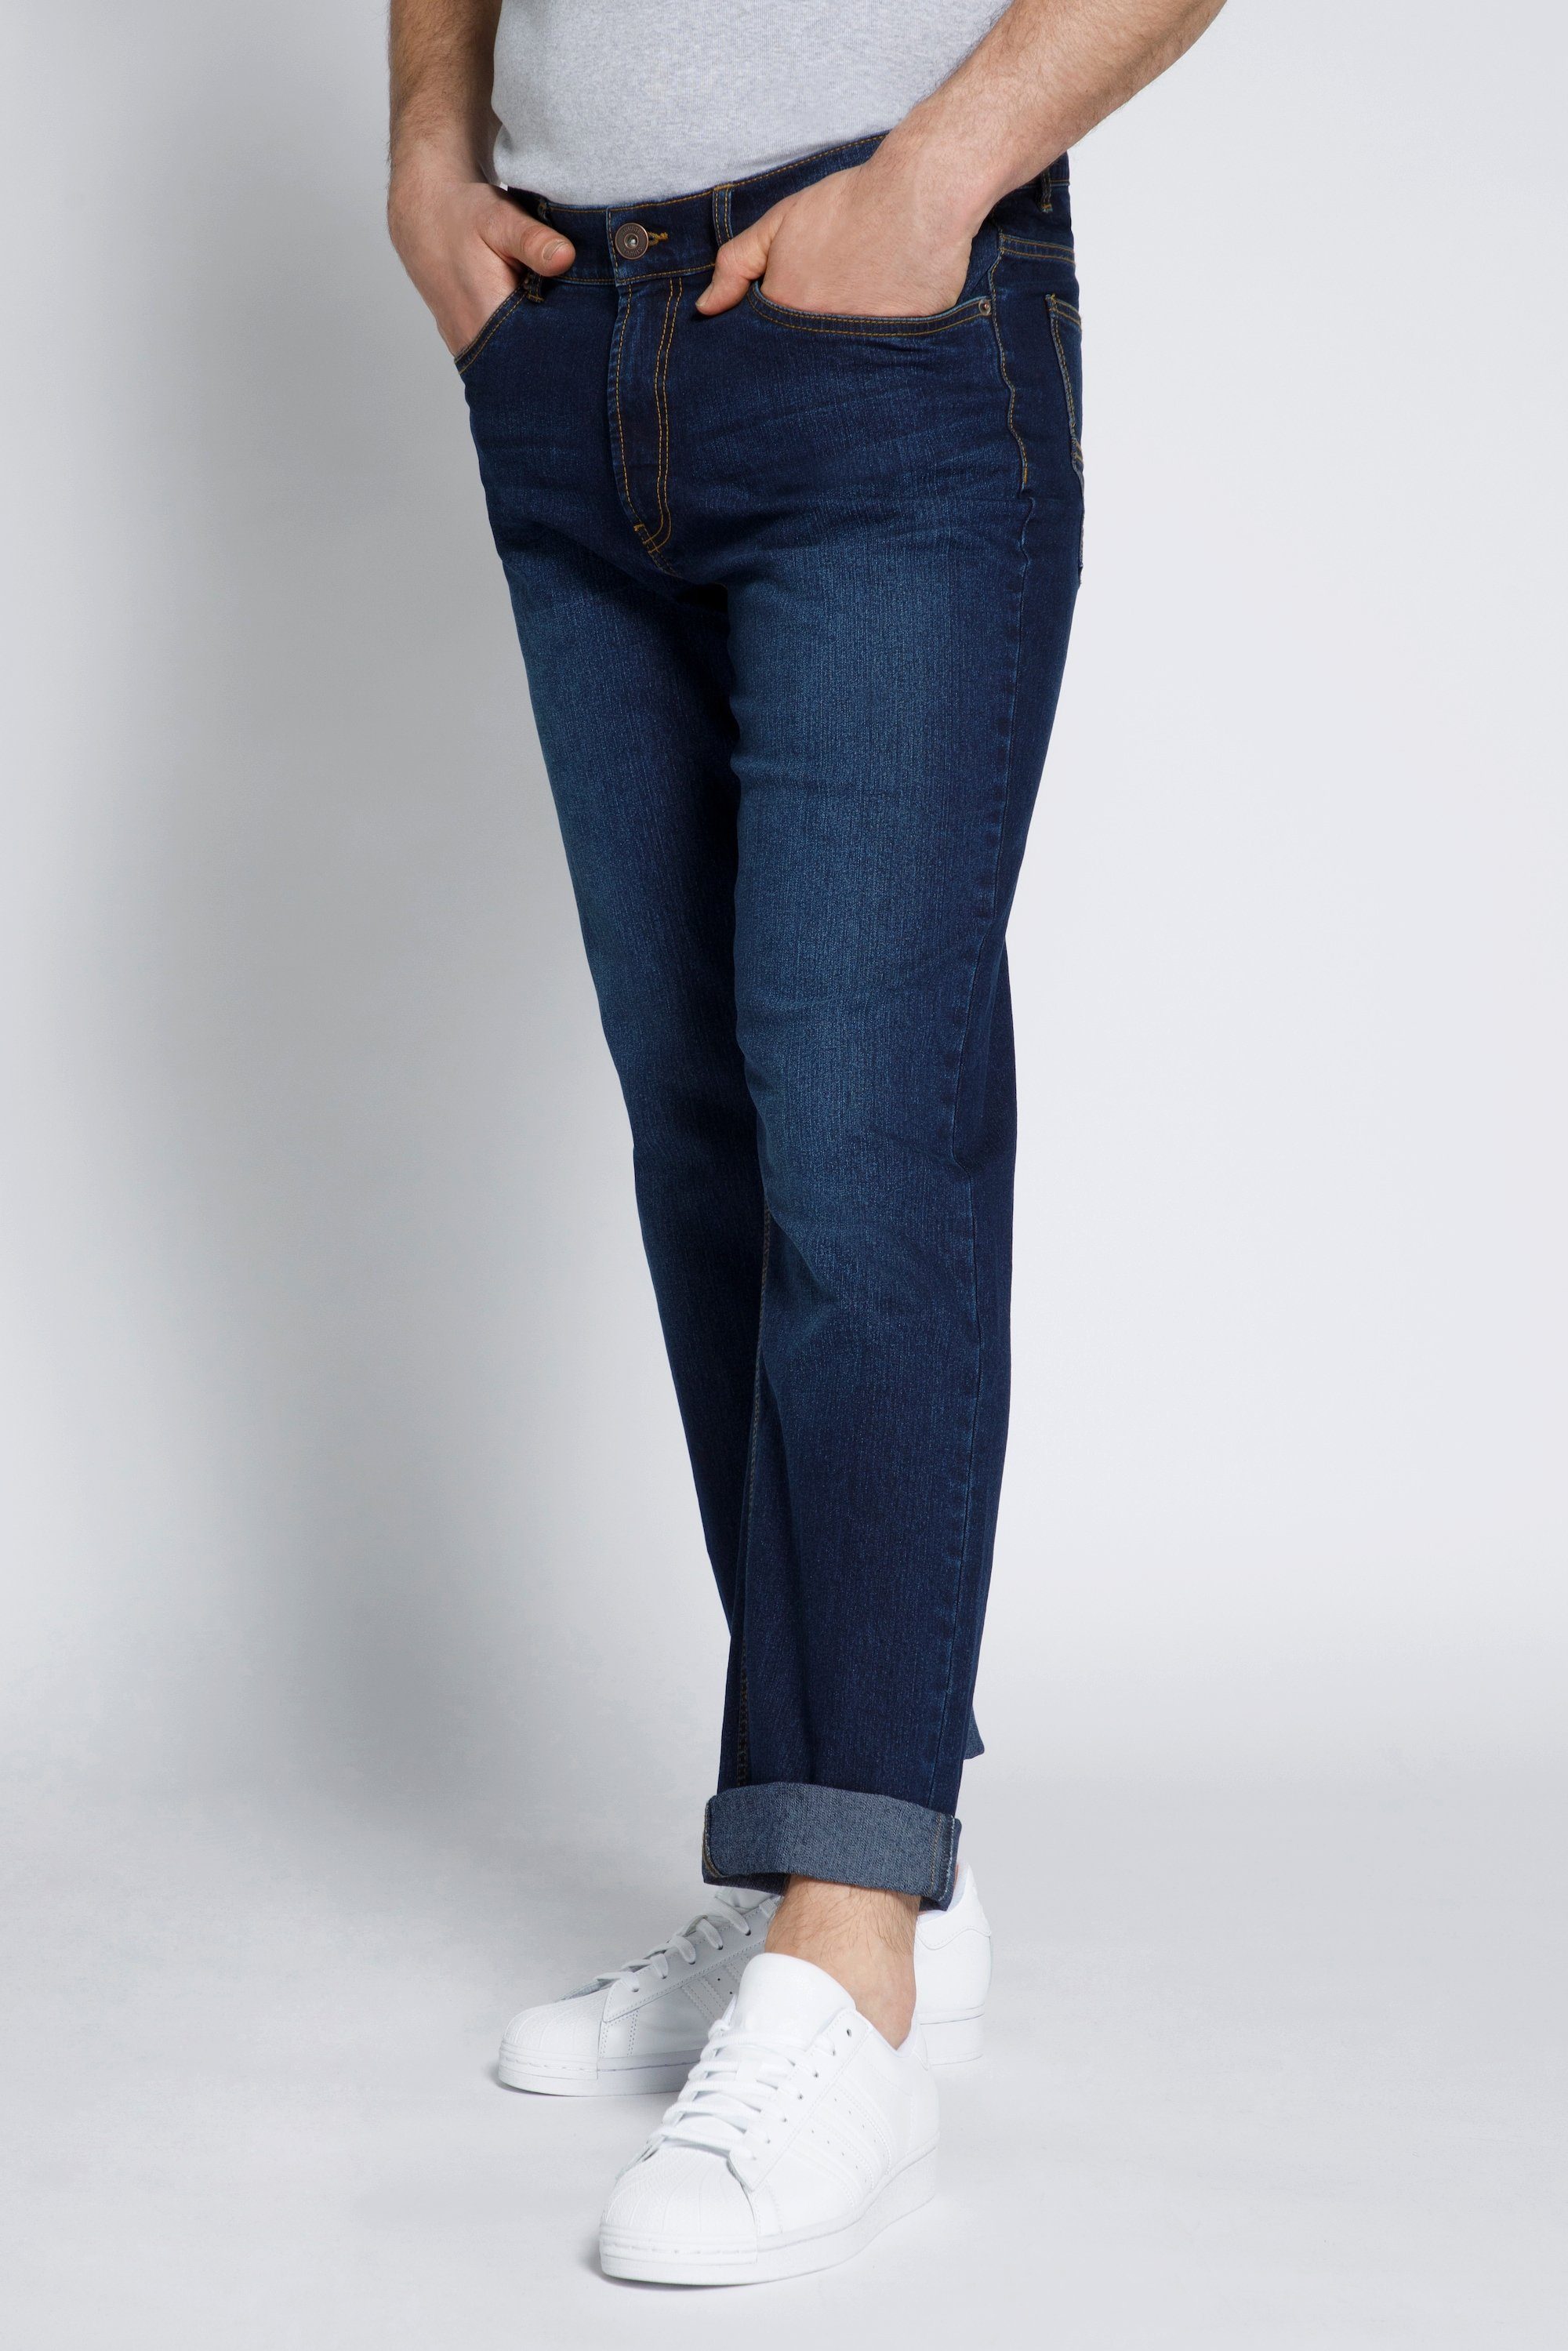 Fit STHUGE STHUGE Fit Bauch 5 5-Pocket-Jeans Pocket Jeans Regular